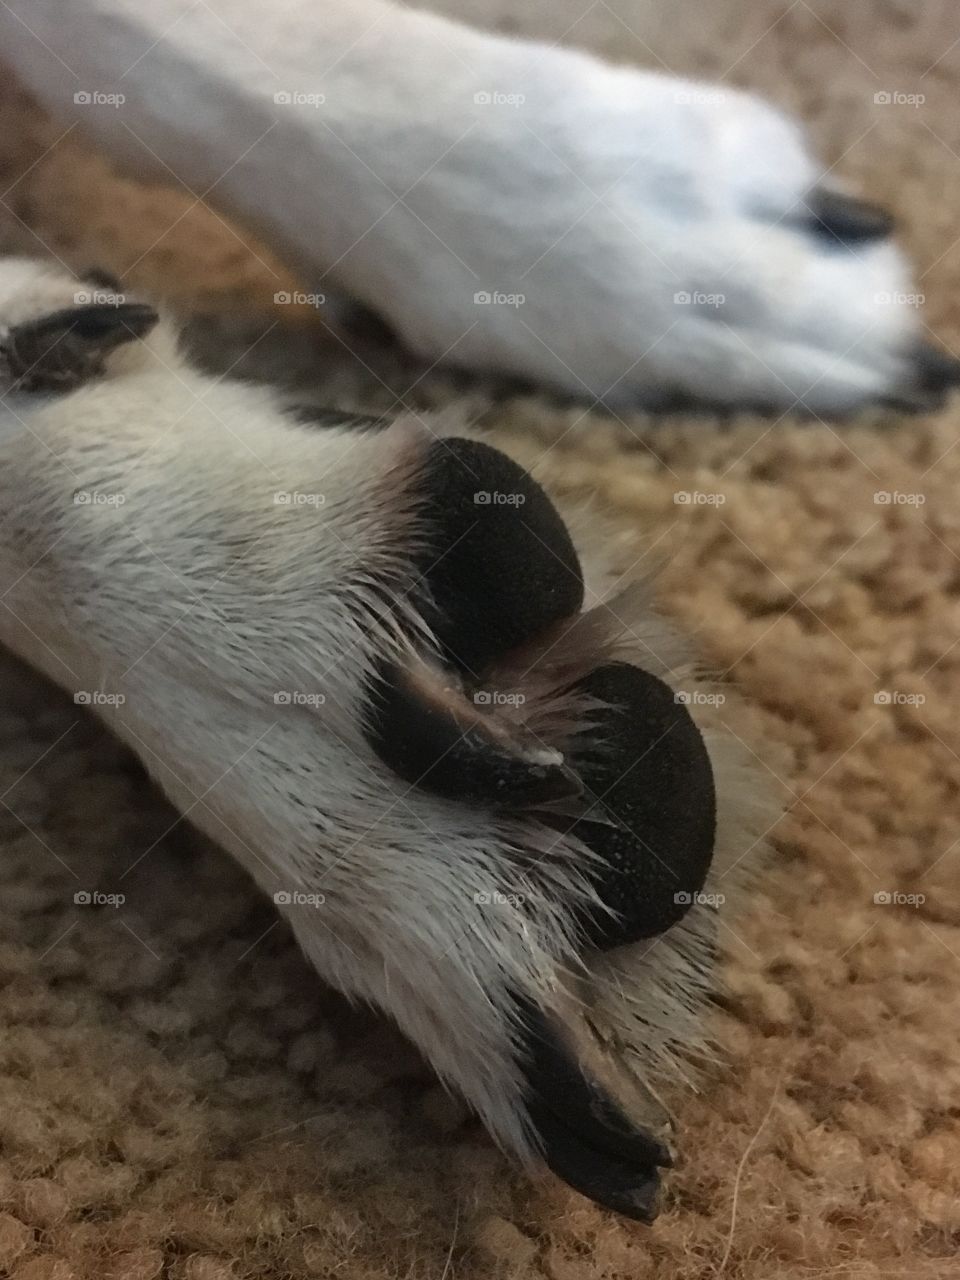 Cute paws